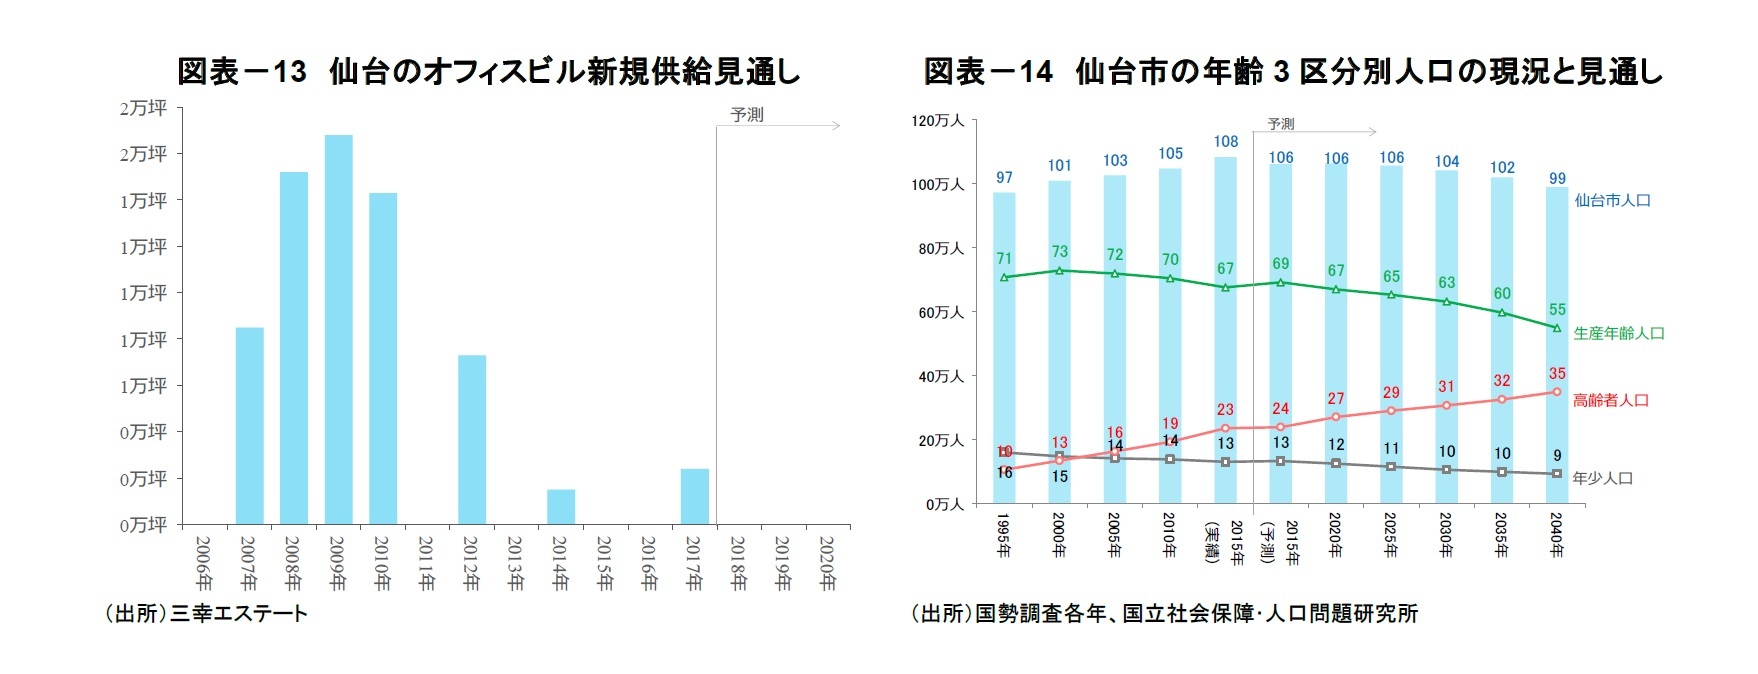 図表－13　仙台のオフィスビル新規供給見通し/図表－14　仙台市の年齢3区分別人口の現況と見通し